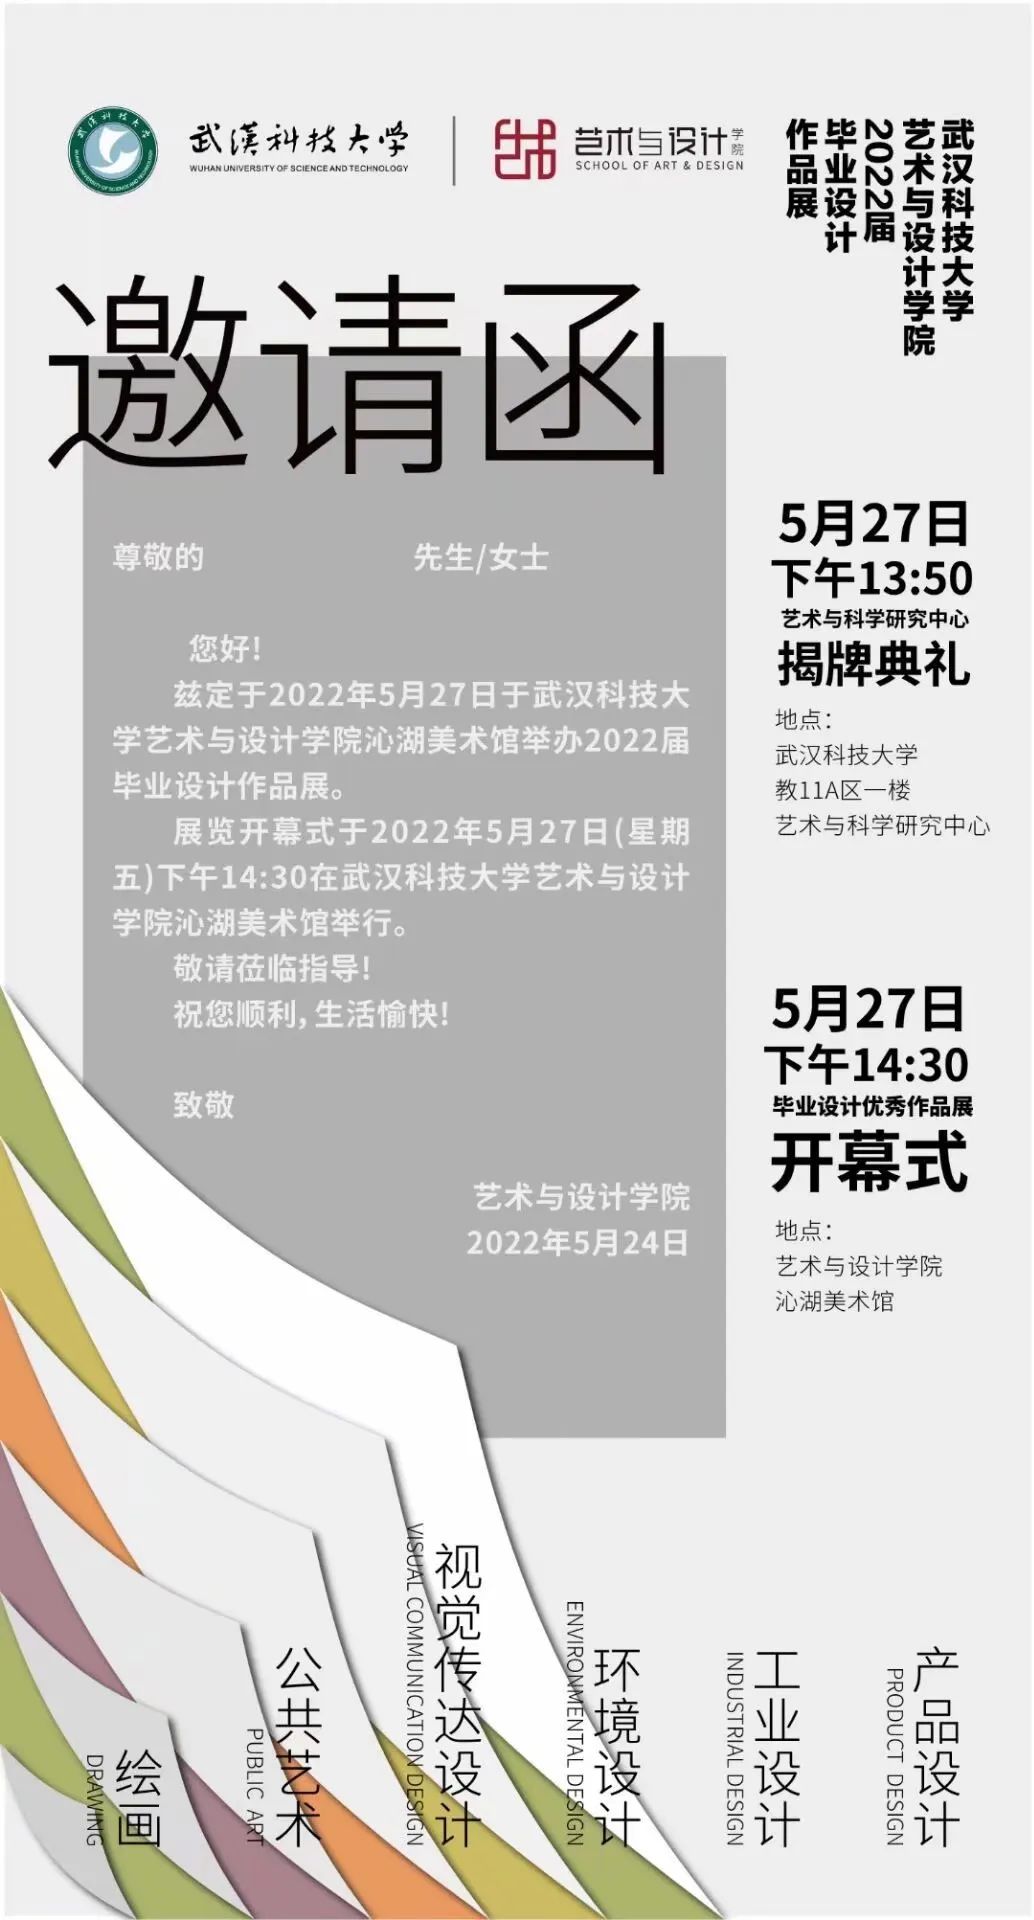 武汉科技大学艺术与设计学院2018级绘画毕业创作展